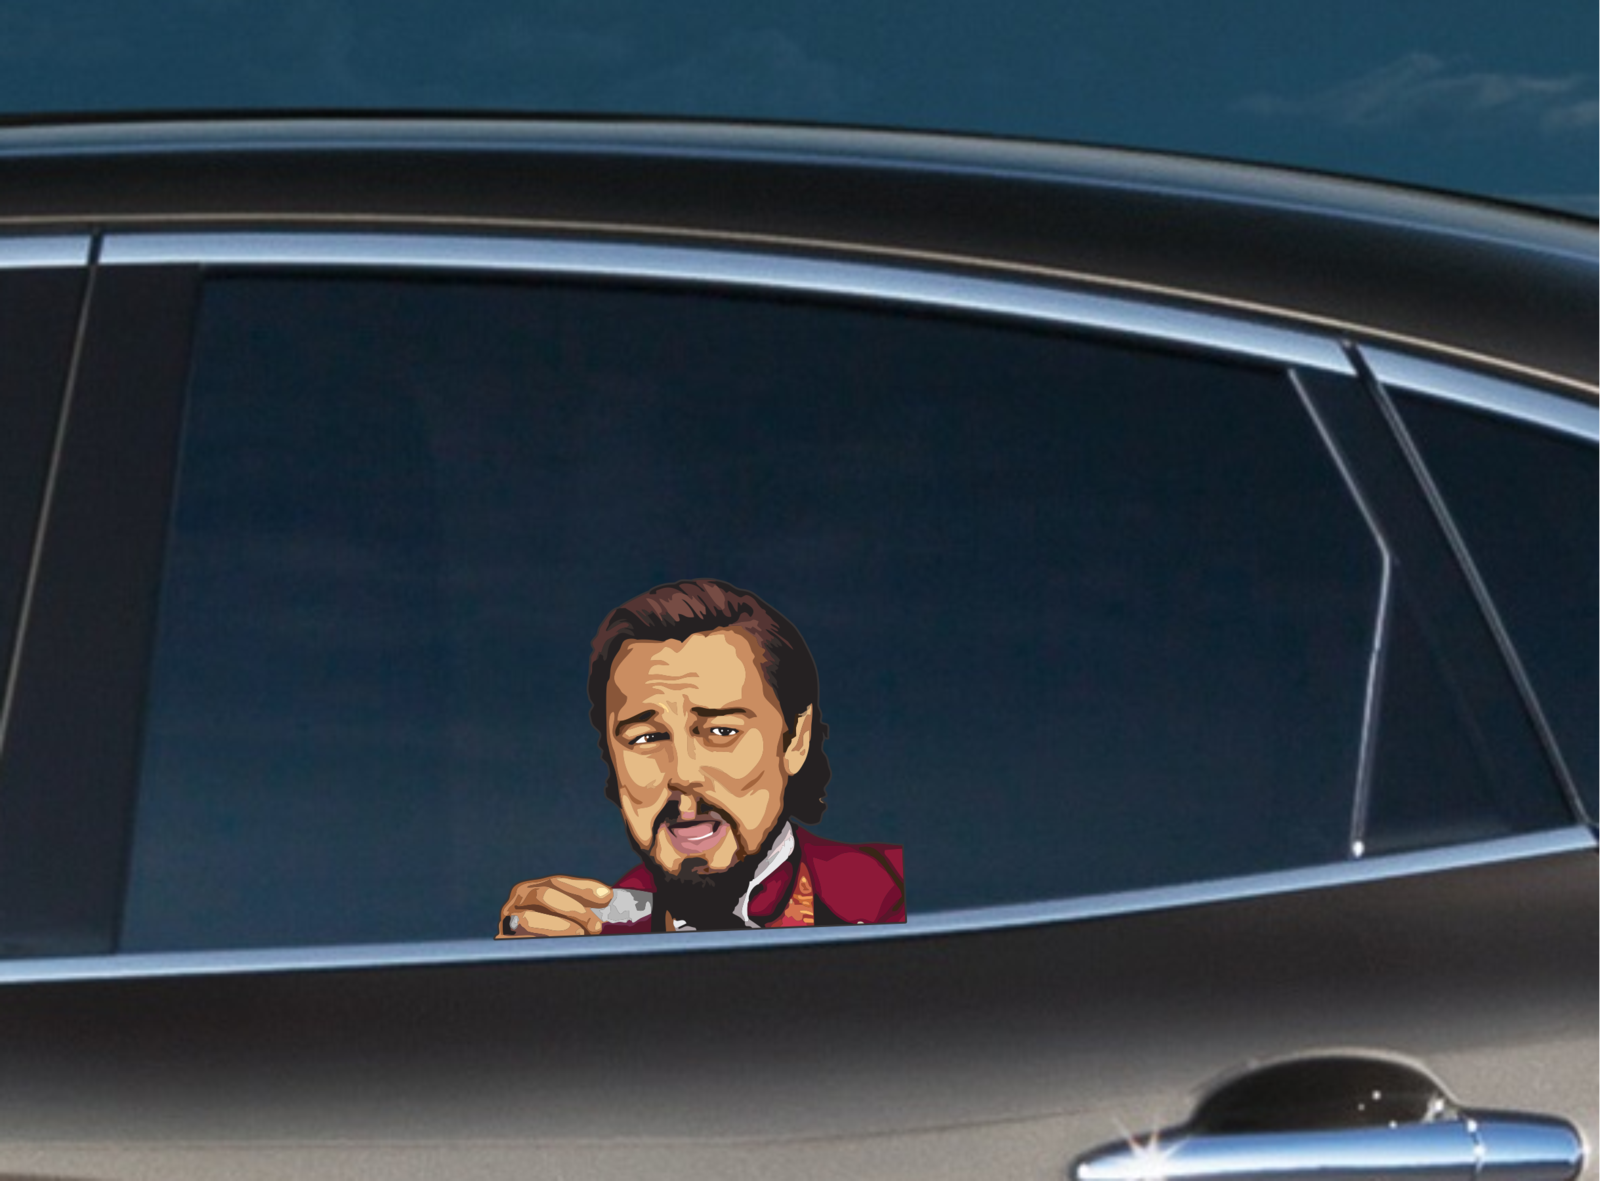 Leonardo MEME funny LOL Peeking Peeker Laptop Cars Window Vinyl Decal Stickers